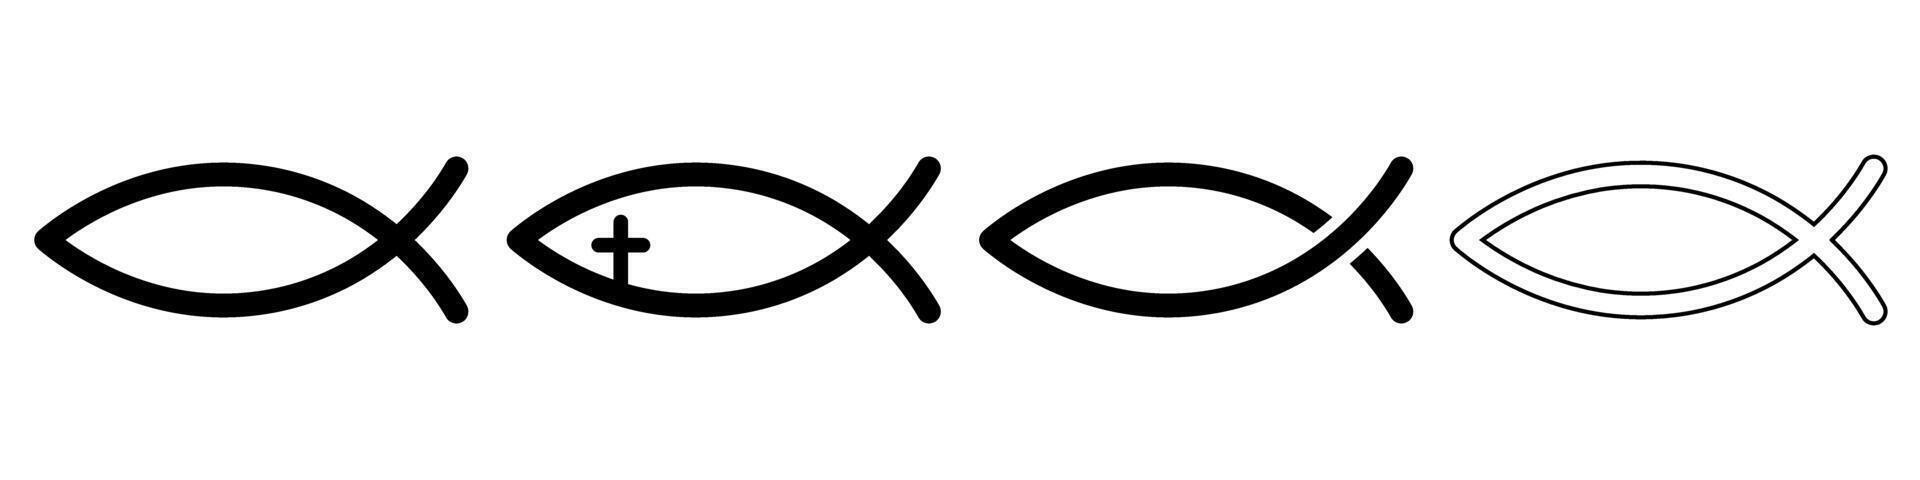 Christian Fisch Symbol einstellen Basic einfach Design vektor